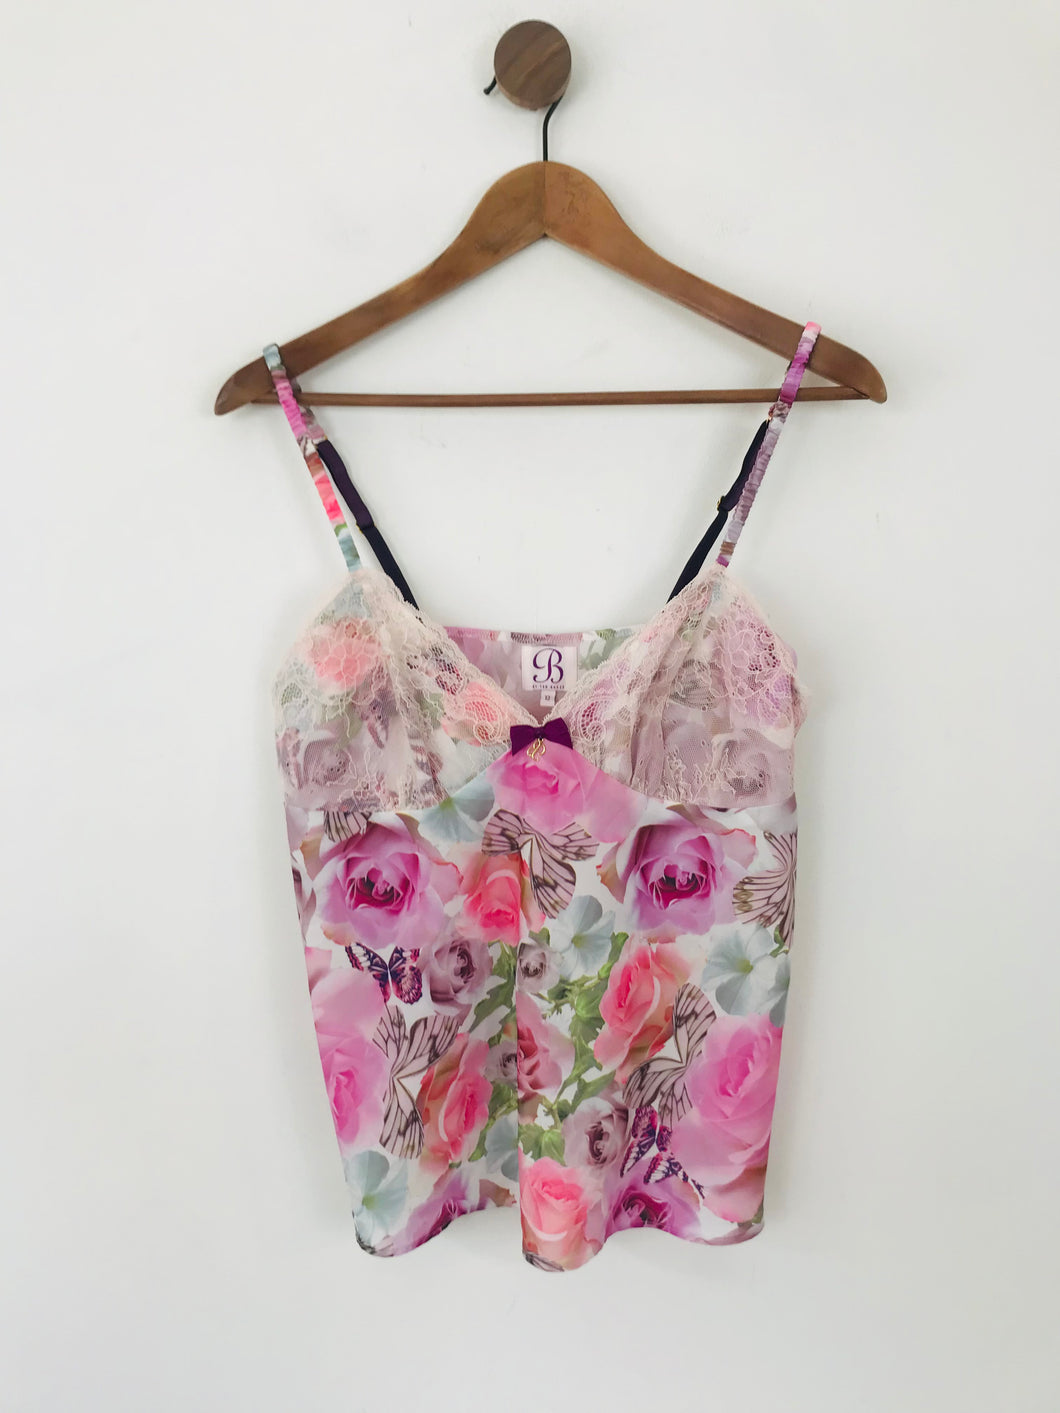 B by Ted Baker Women's Floral Nightwear Tank Top | UK12 | Pink